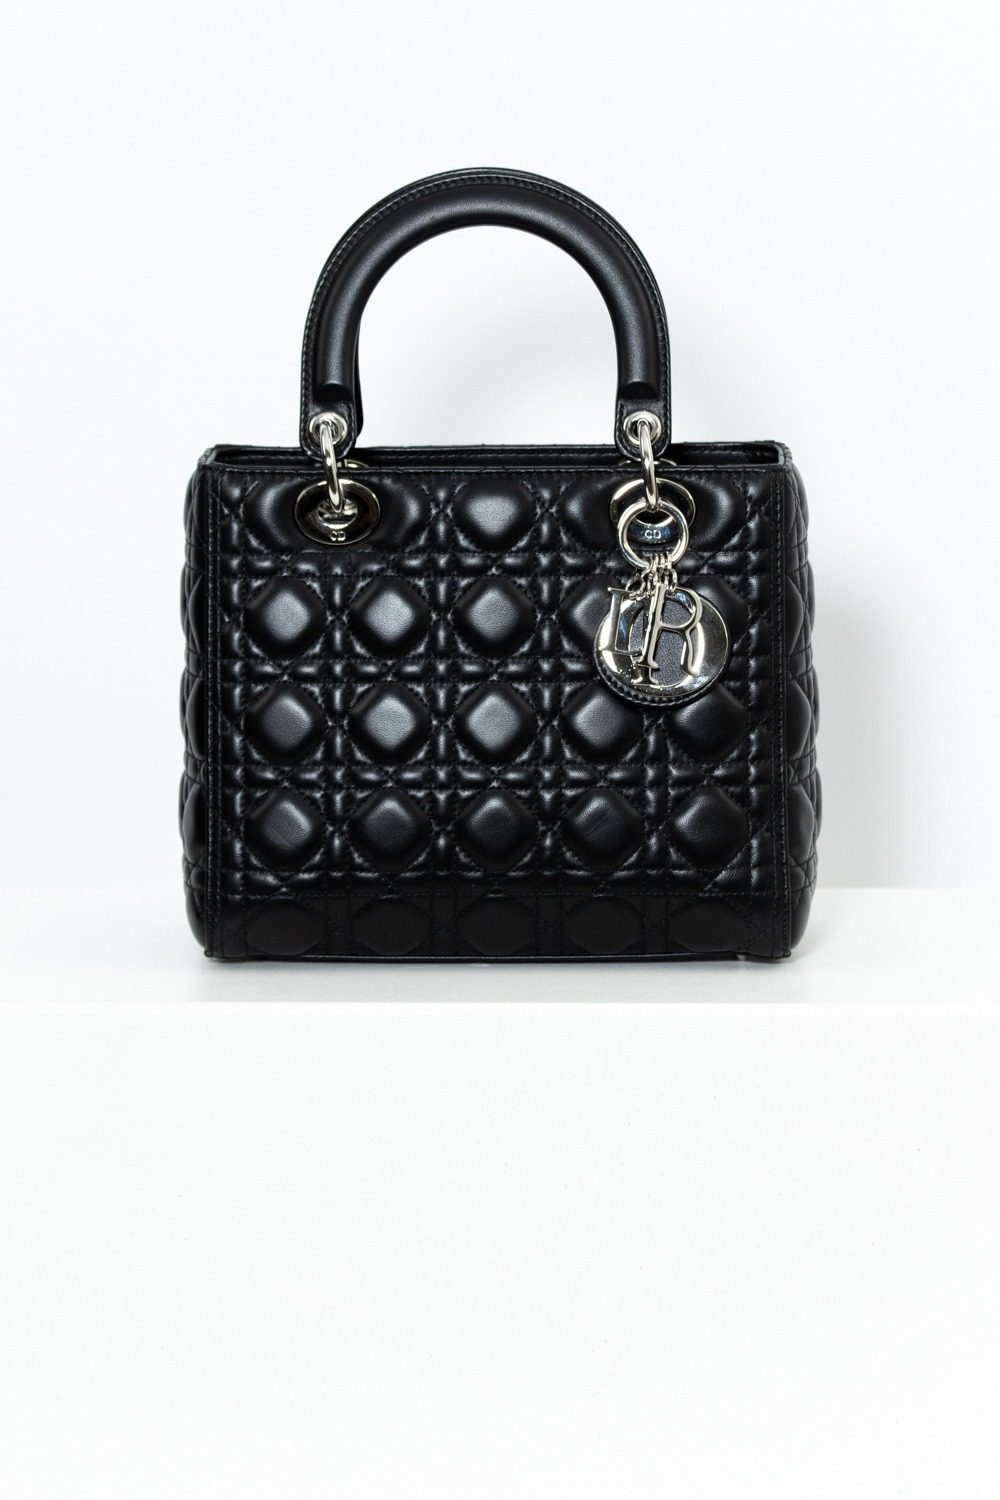 Dior "Lady Dior" Handtasche in Schwarz